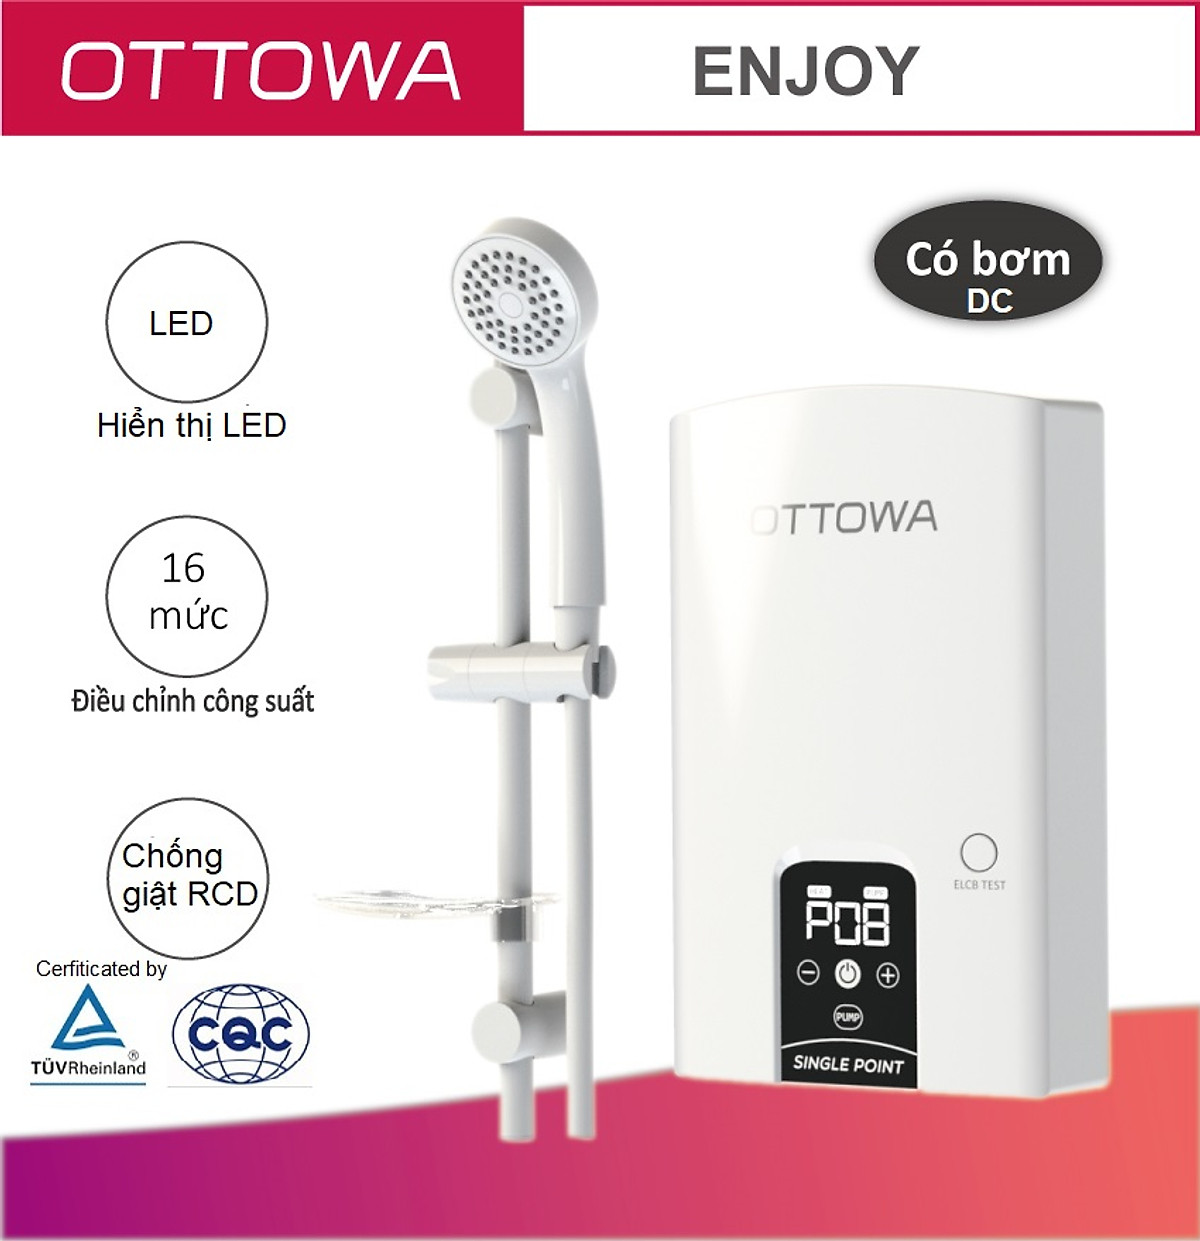 Máy tắm nước nóng OTTOWA TE45P01 - Hàng chính hãng - Có bơm